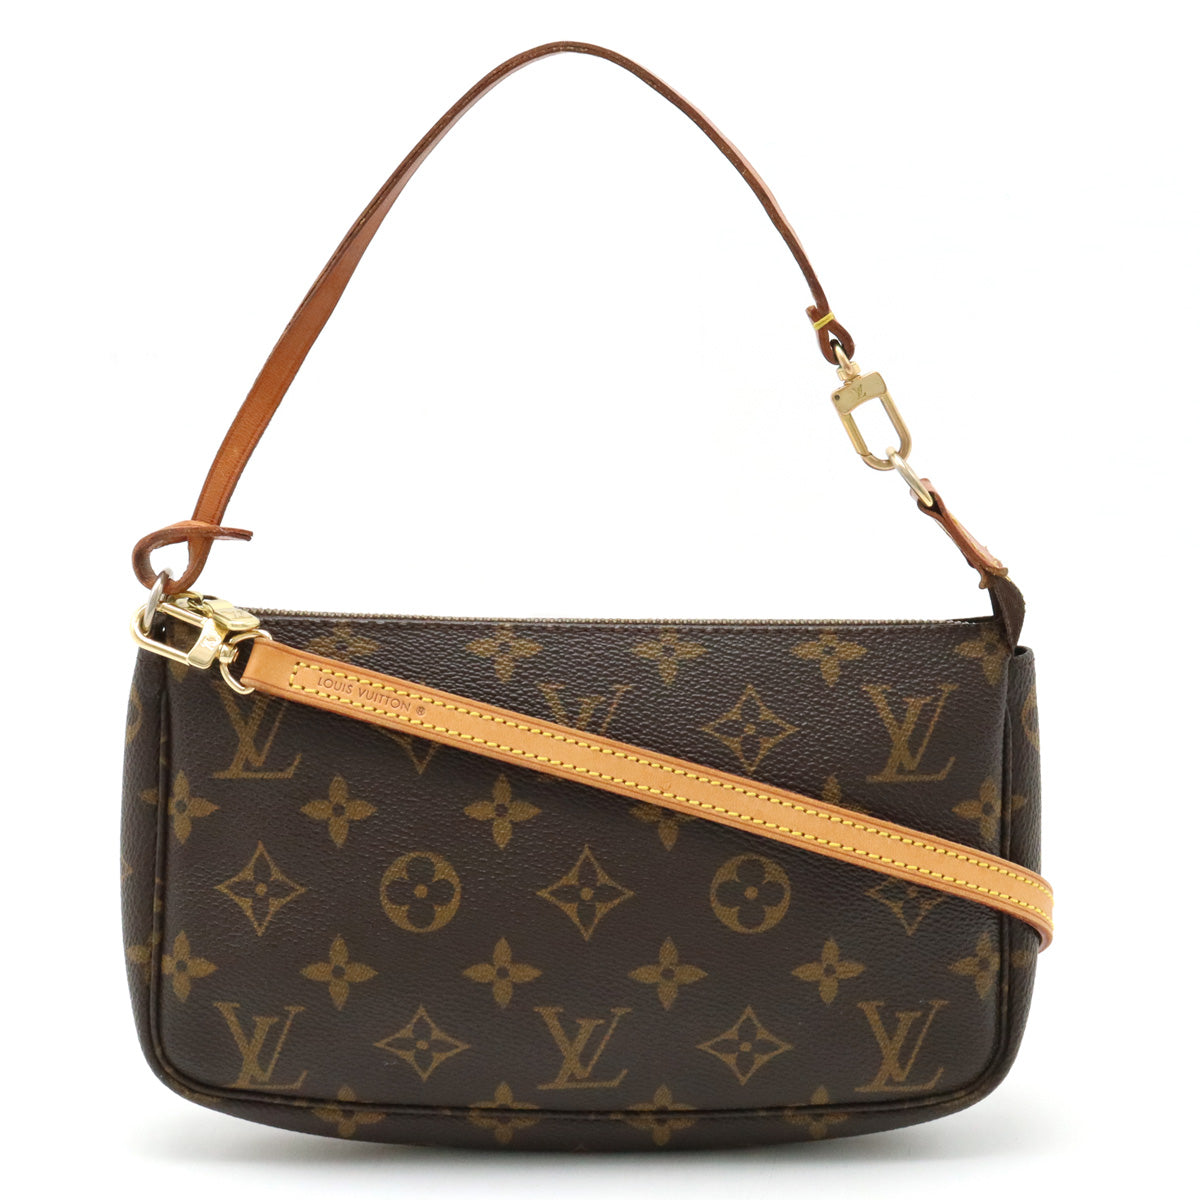 Louis-Vuitton-Epi-Leather-Adjustable-Shoulder-Strap-Noir-120cm